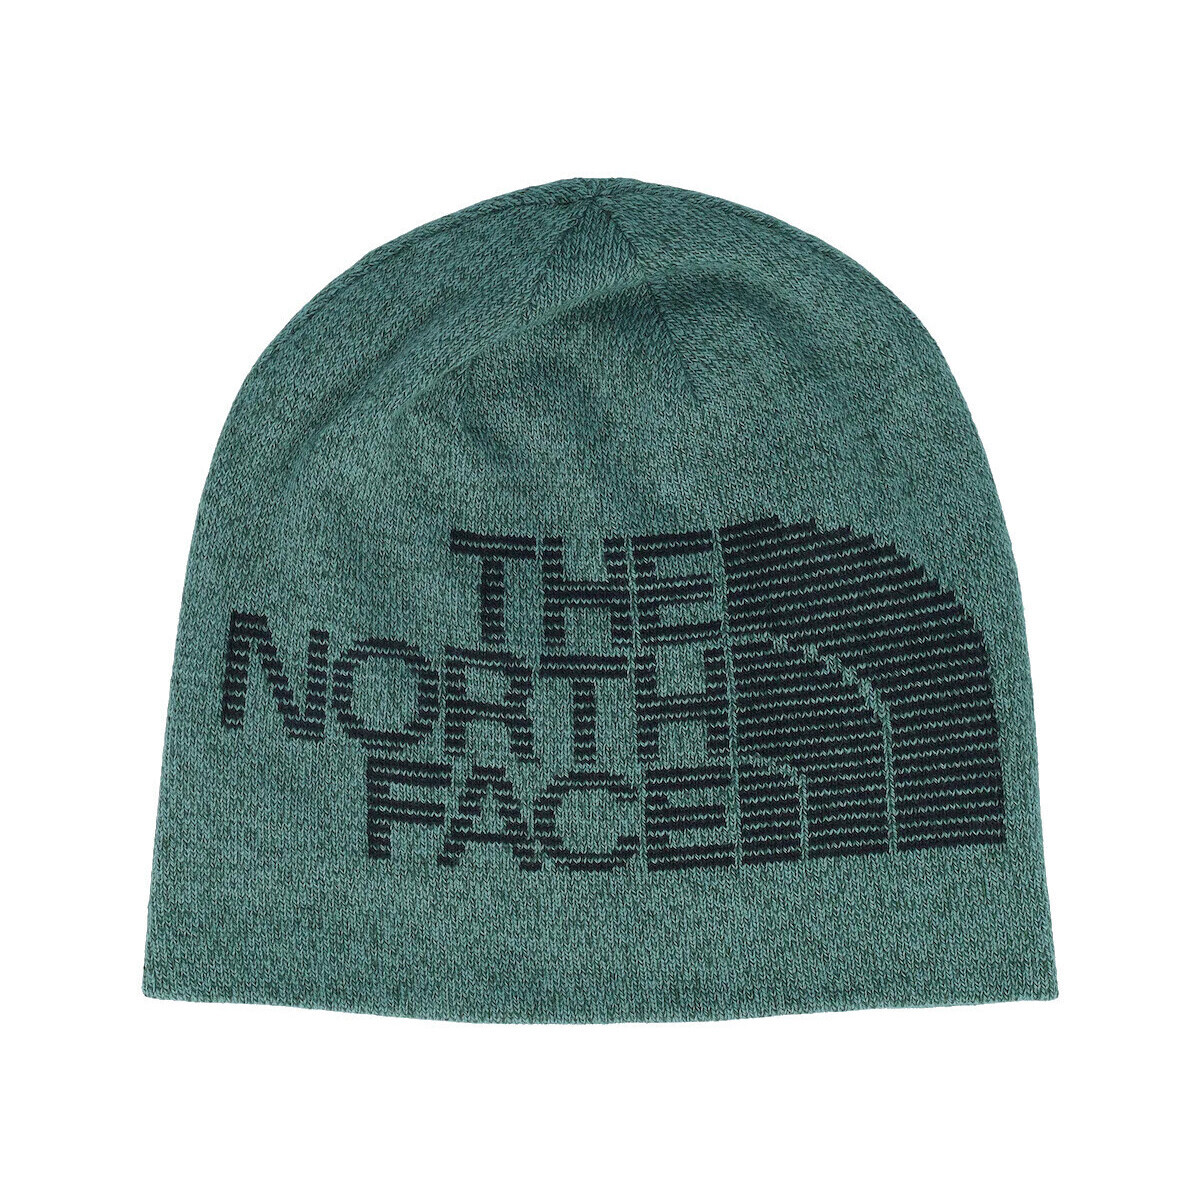 Accesorios textil Sombrero The North Face NF0A7WLA Verde